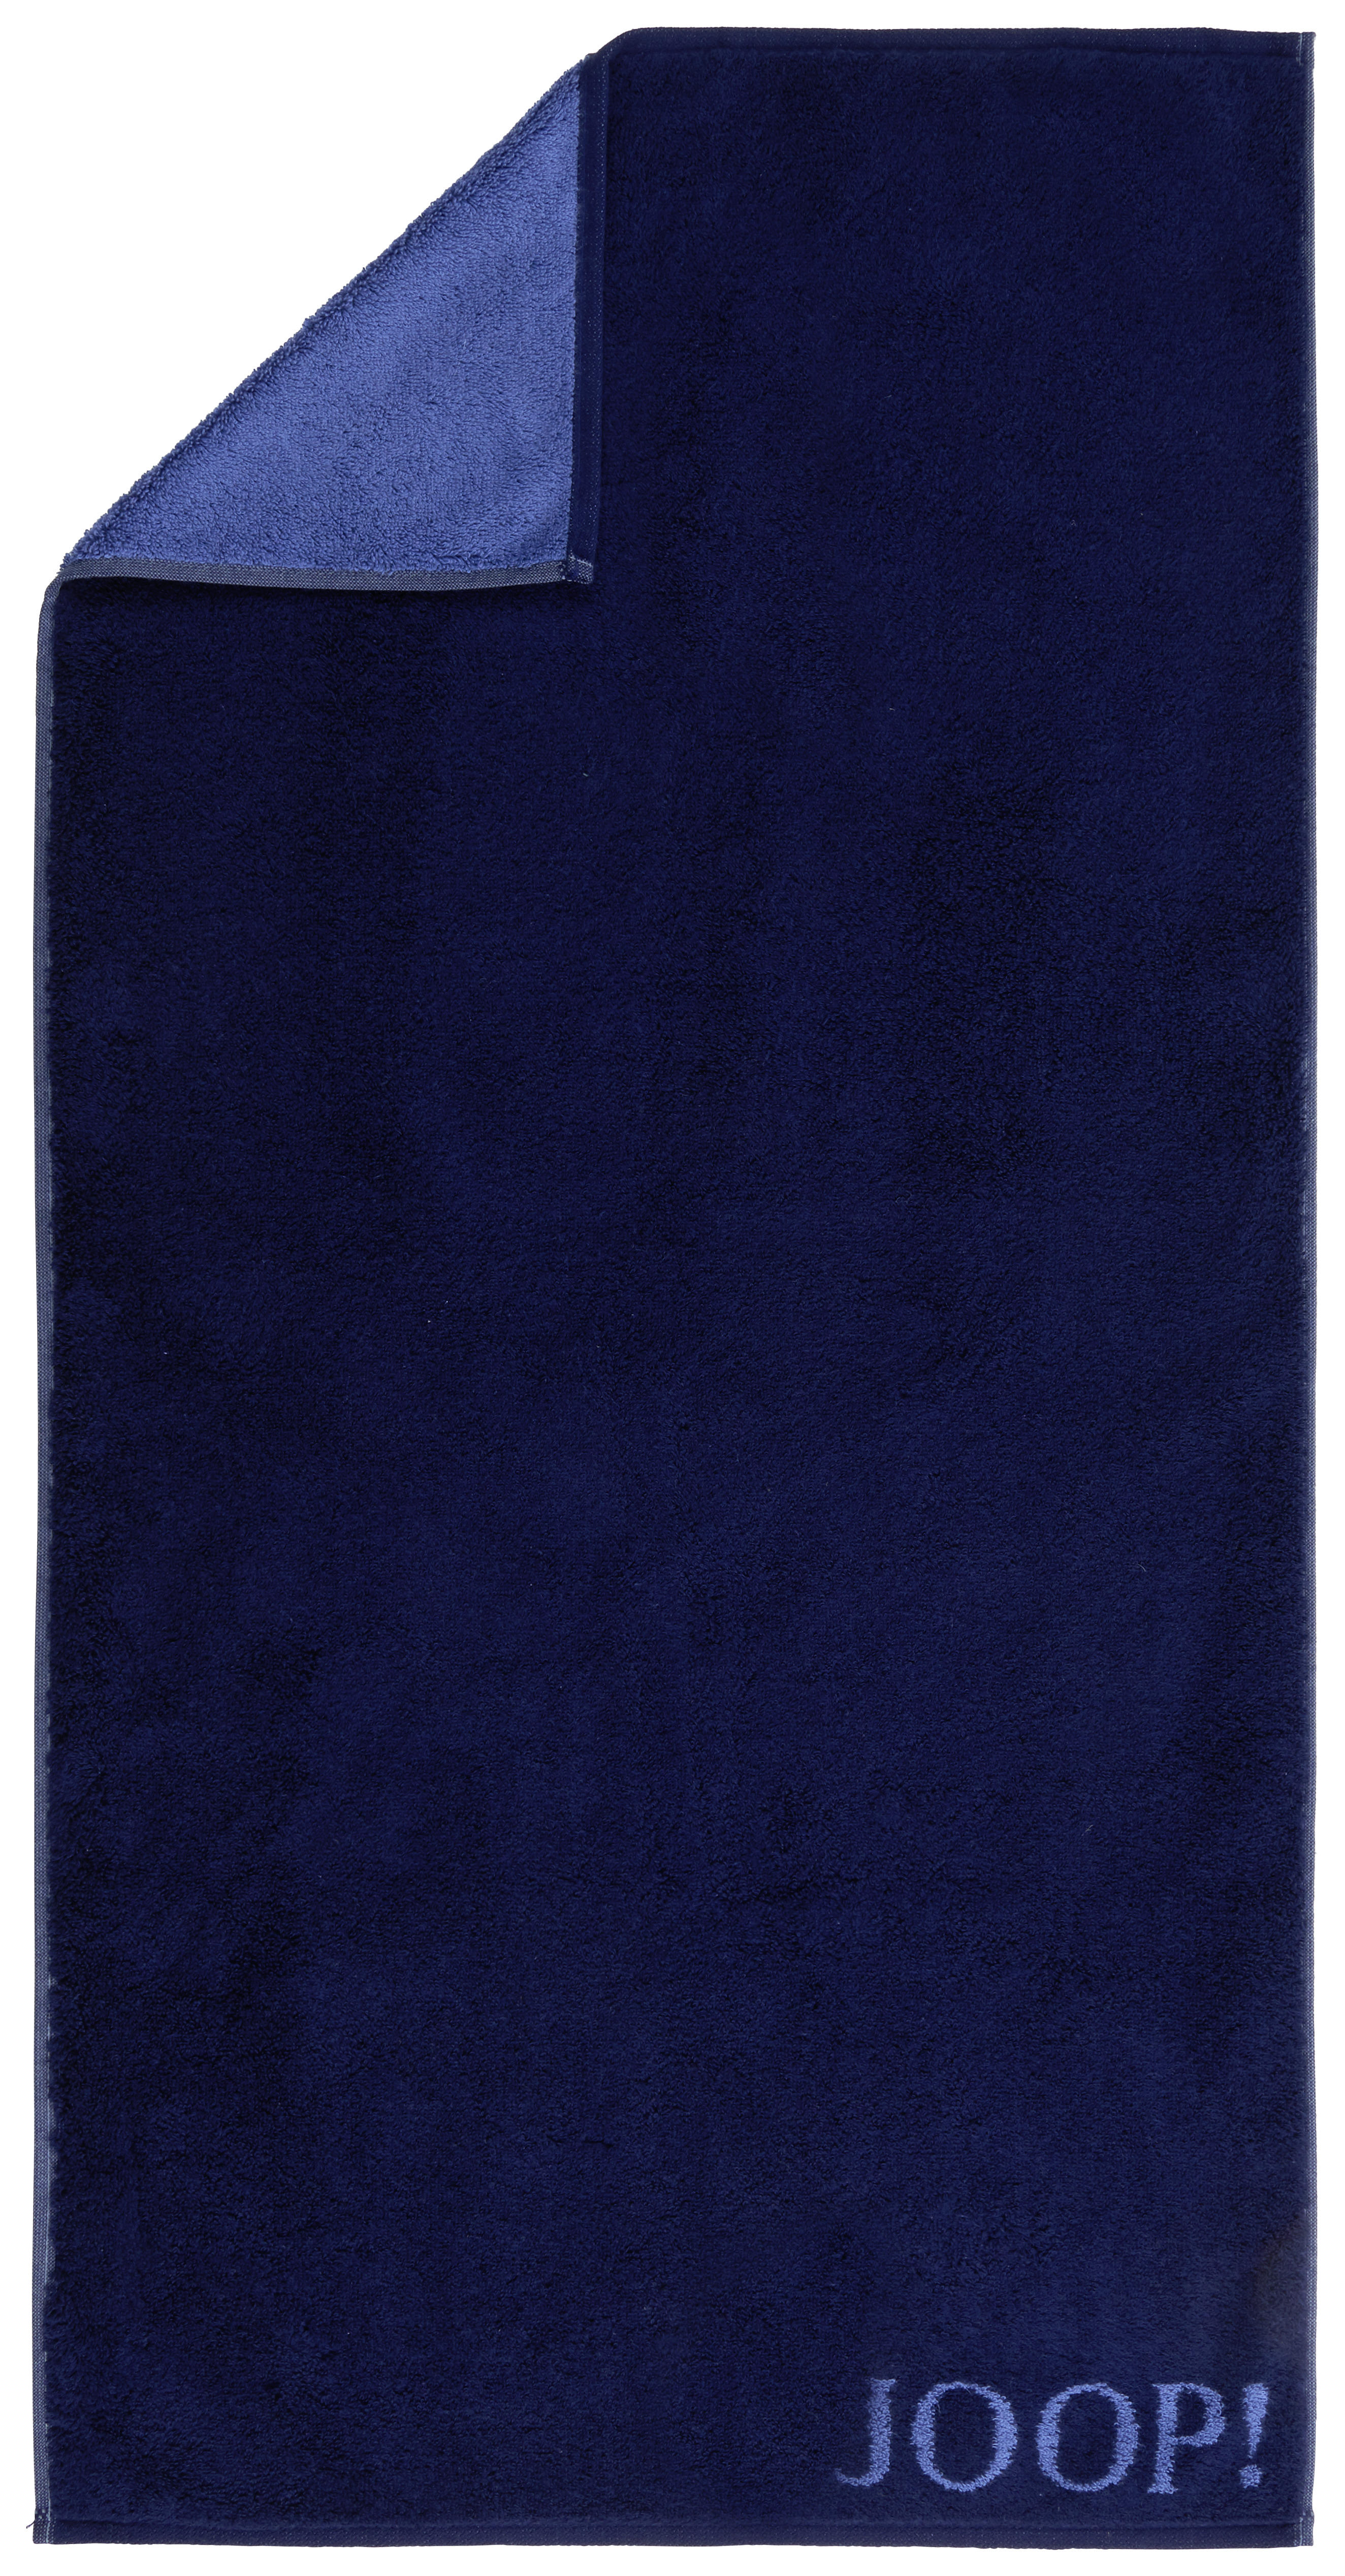 HANDTUCH Classic Doubleface  - Blau/Dunkelblau, Design, Textil (50/100cm) - Joop!